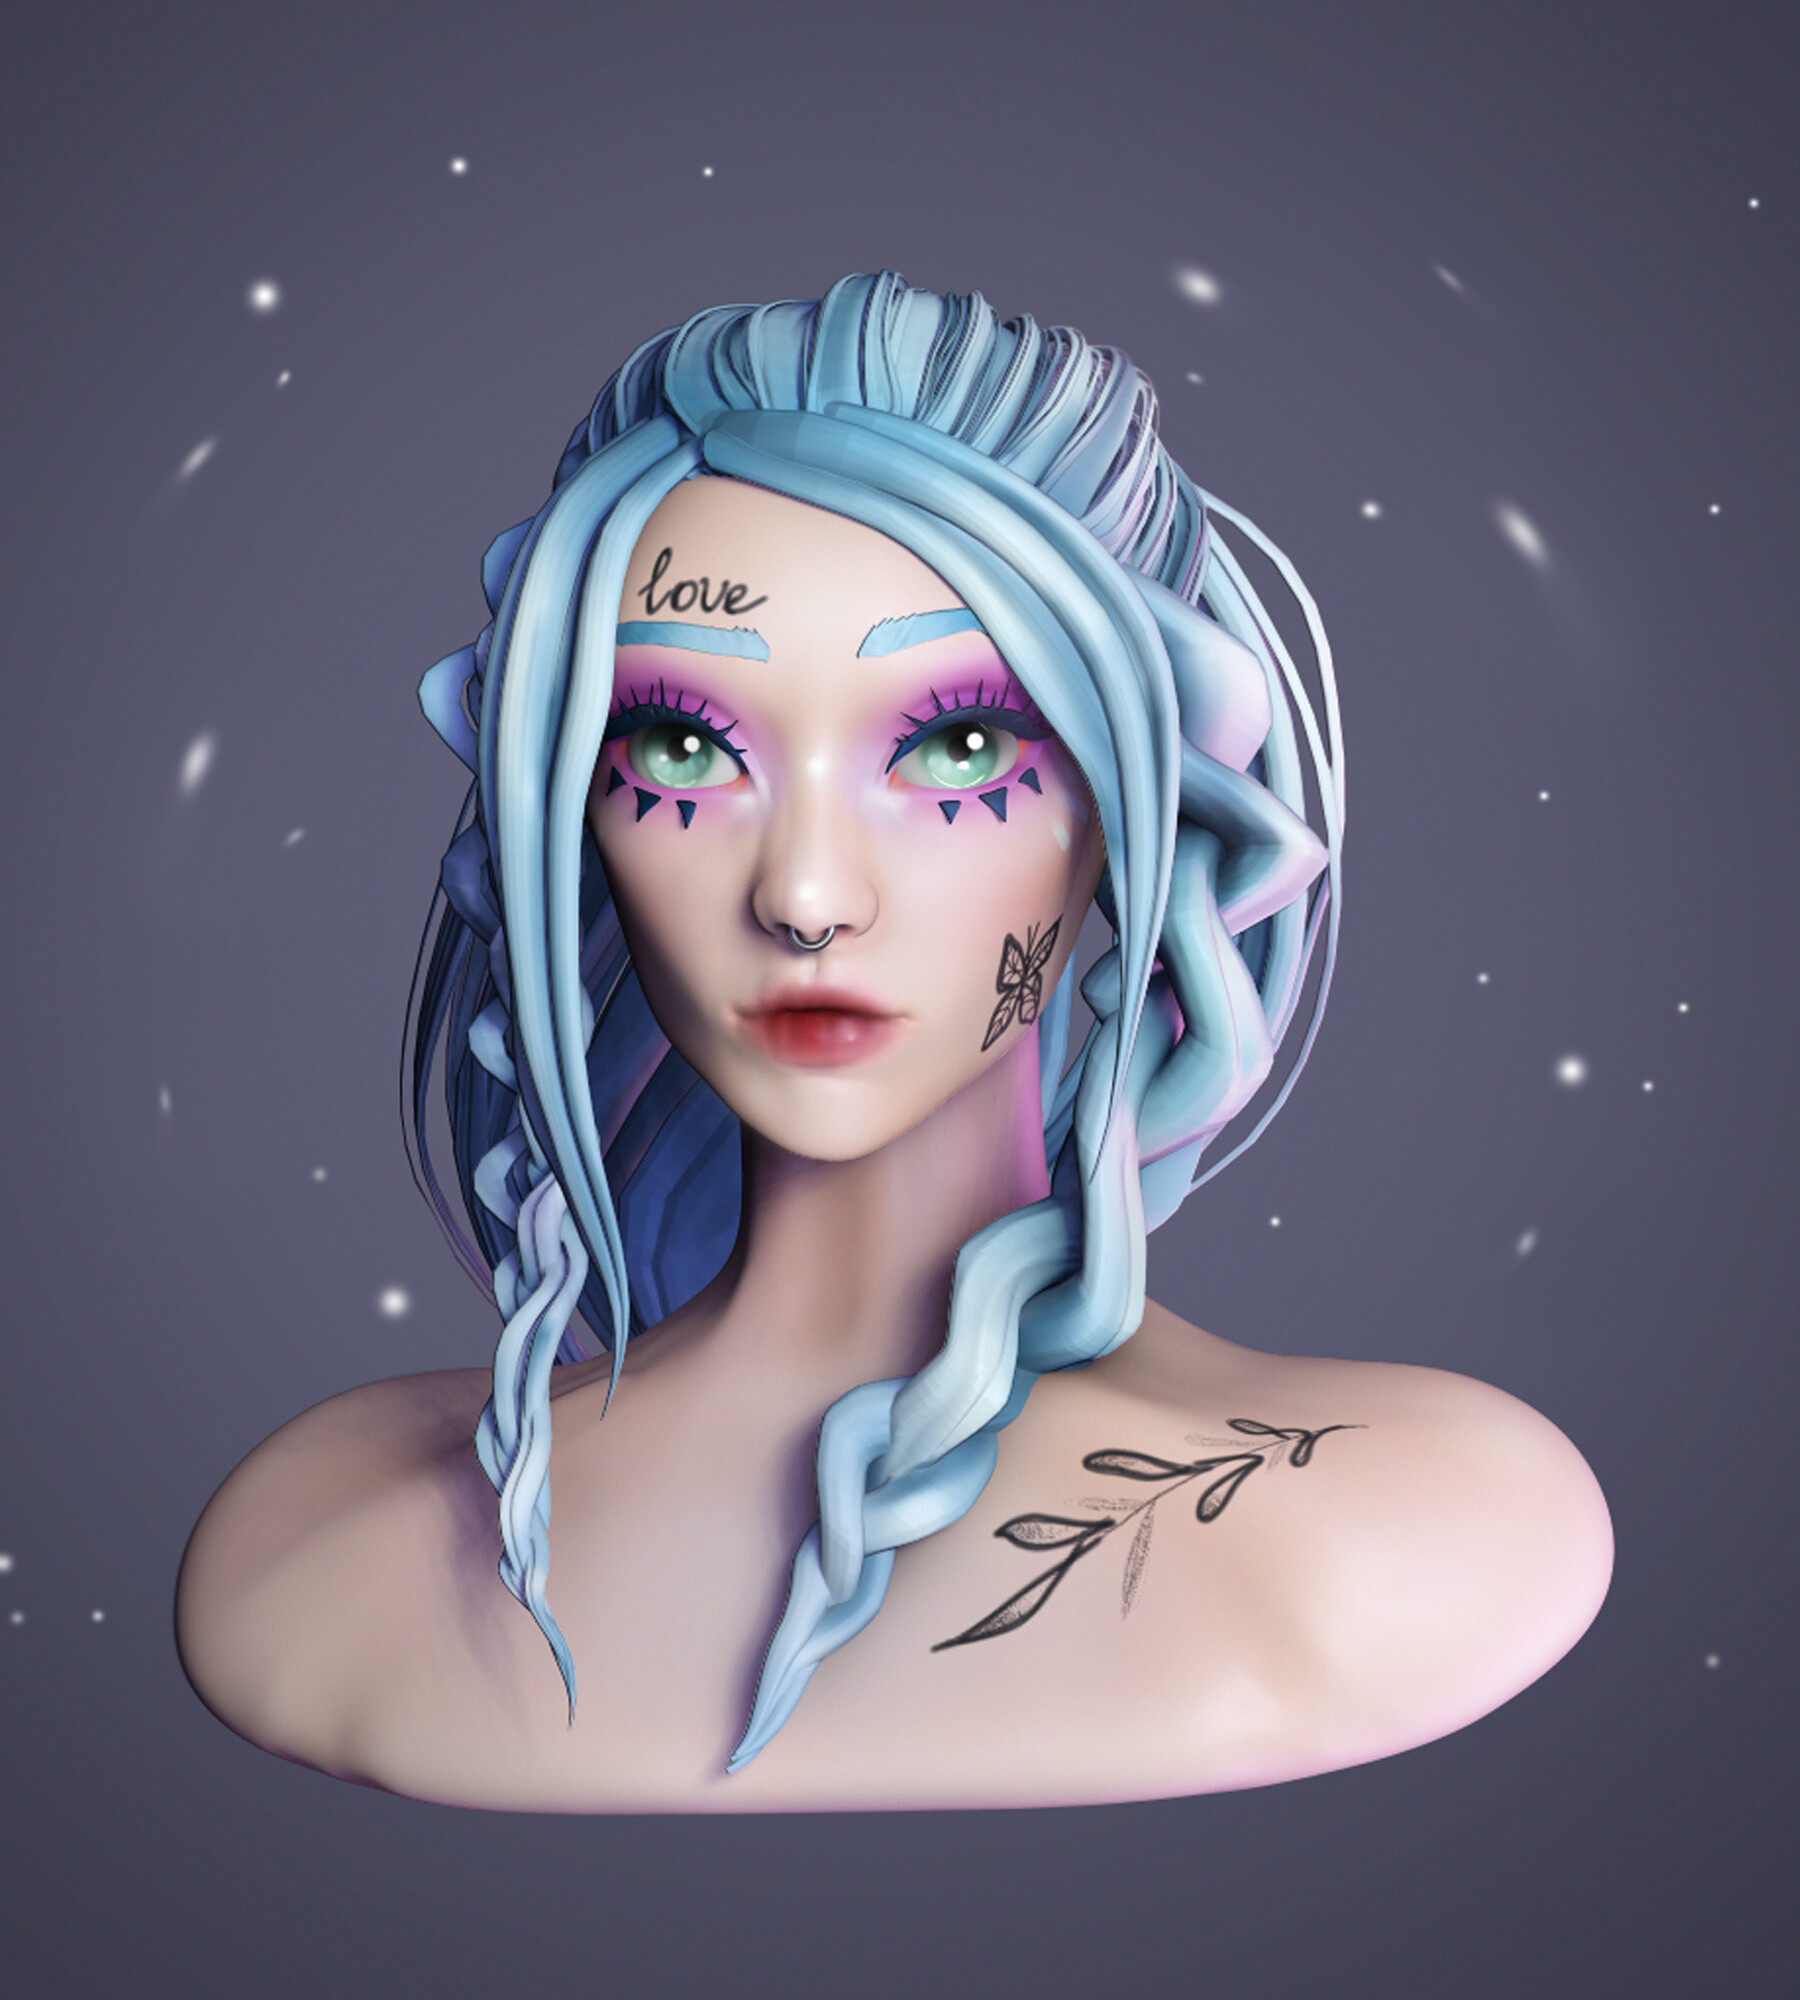 ArtStation - Blue hair girl